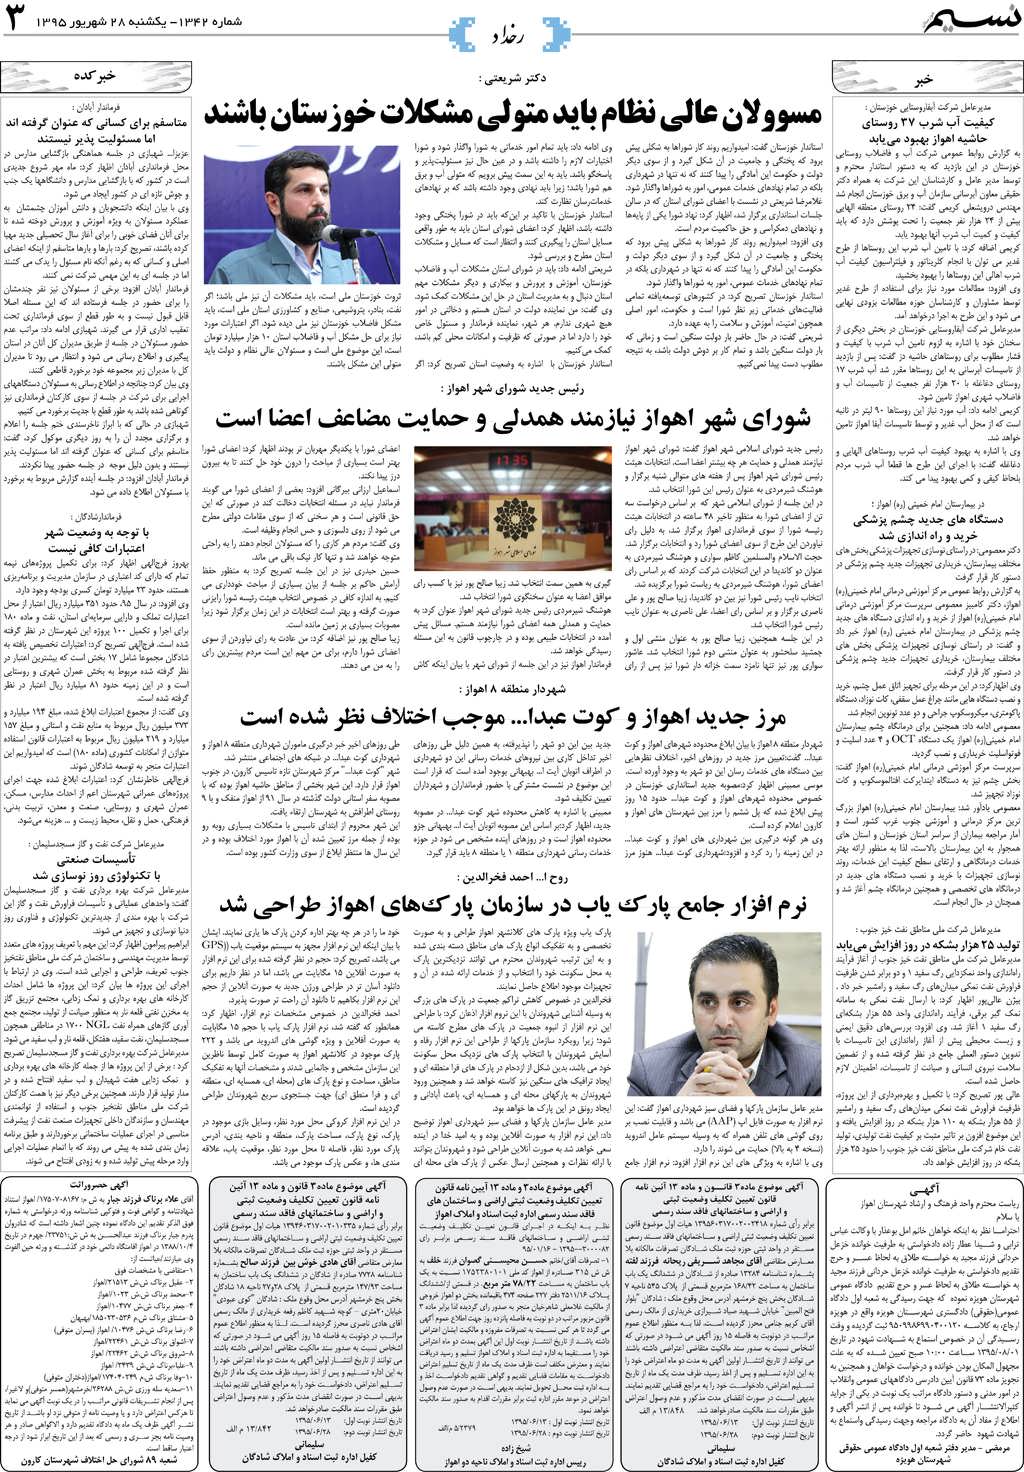 صفحه رخداد روزنامه نسیم شماره 1342